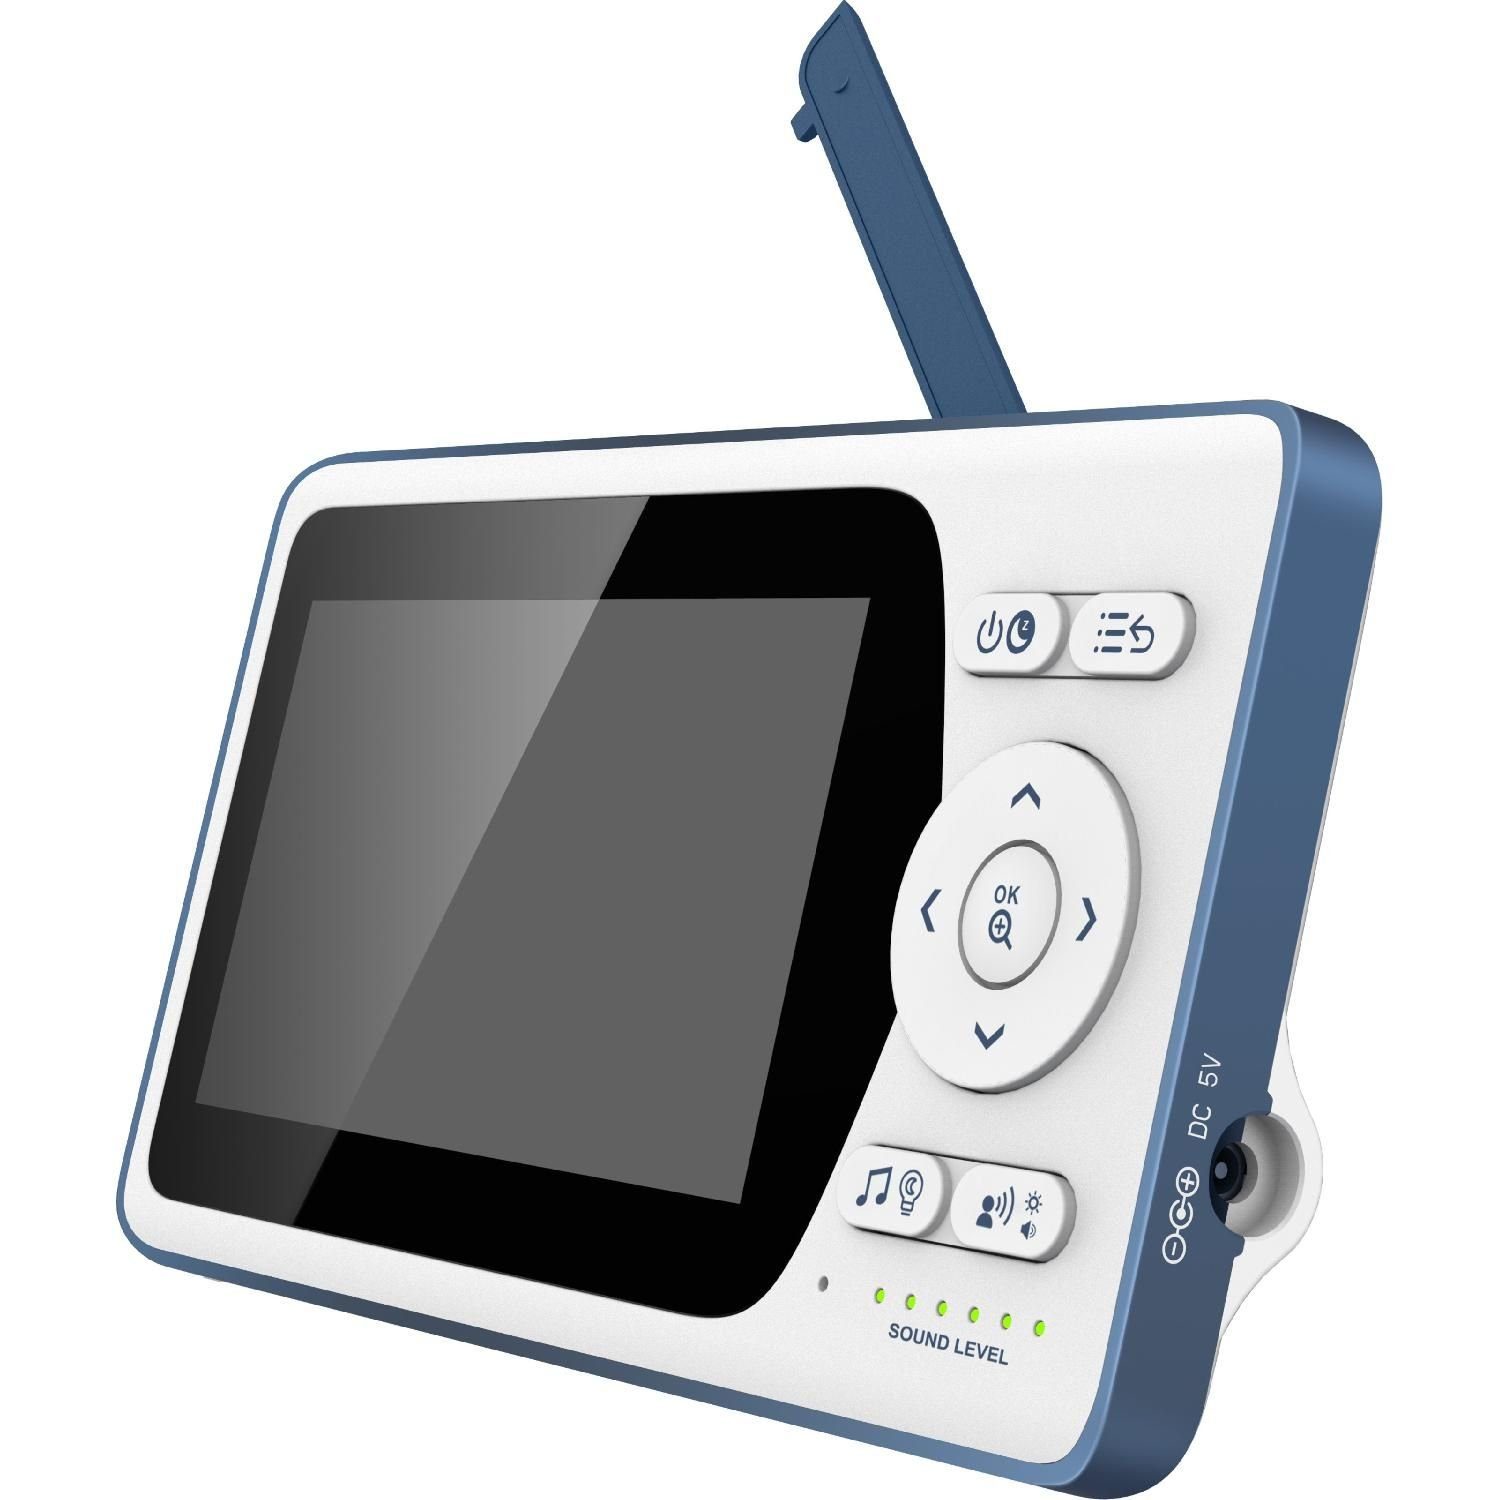 Telefunken Video-Babyphone VM-M500 Video-Babyphone 4.3'' 640x480px Display Infrarotmodus